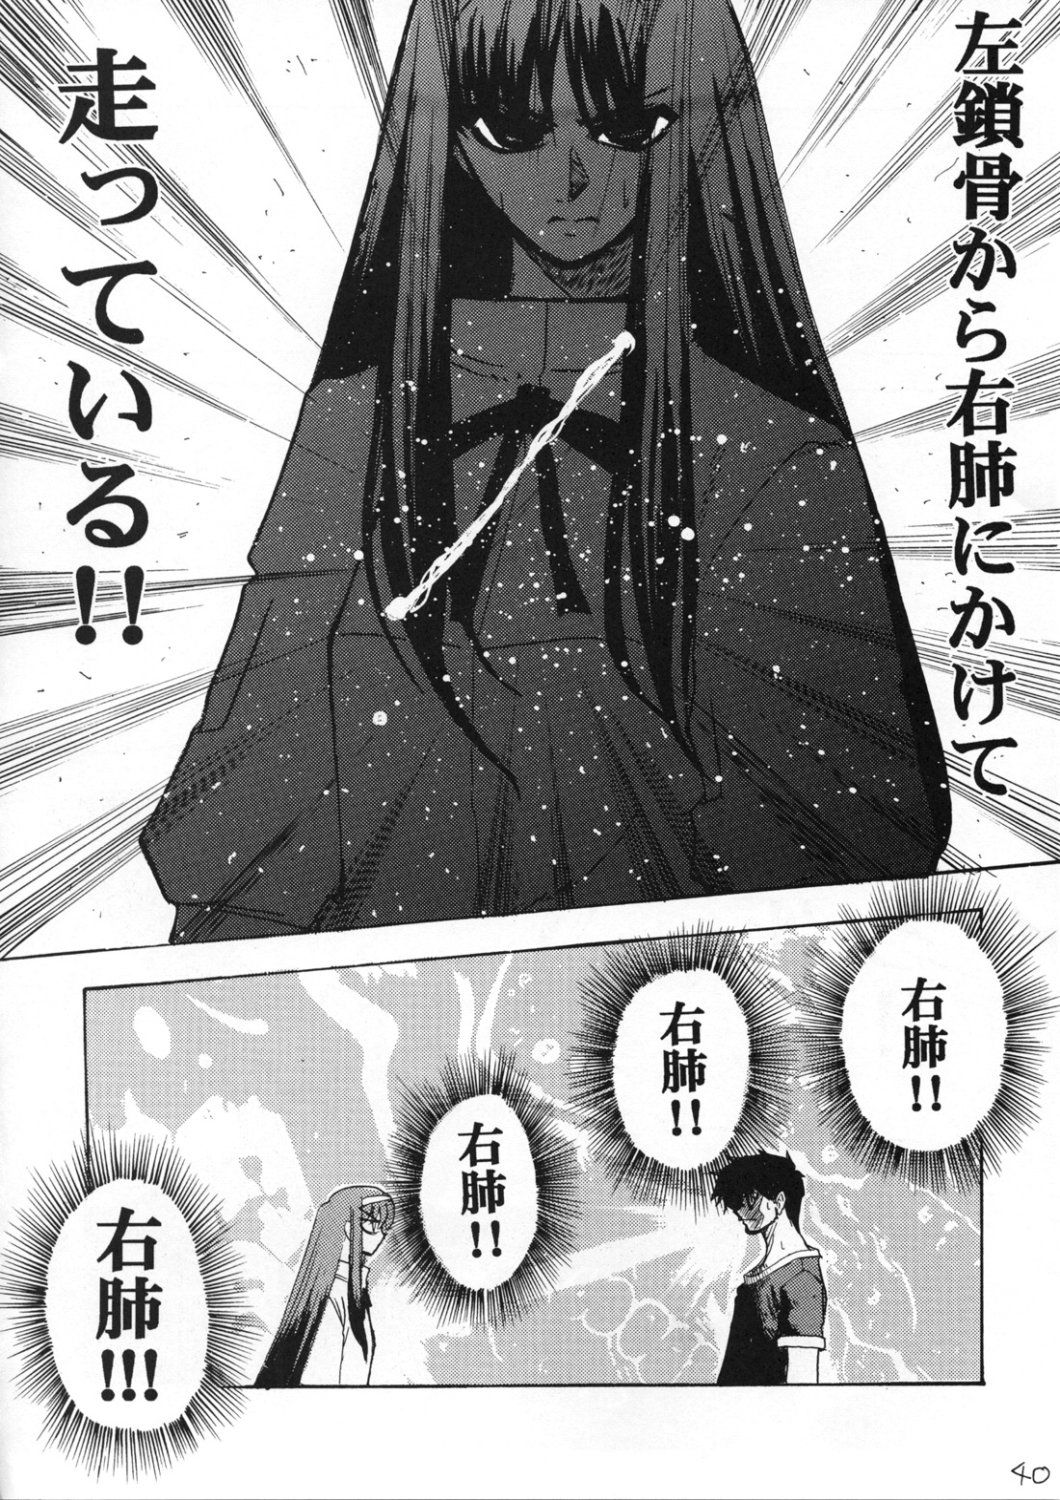 [Inochi no Furusato, Neko-bus Tei, Zangyaku Koui Teate] Akihamania [AKIHA MANIACS] (Tsukihime) page 39 full